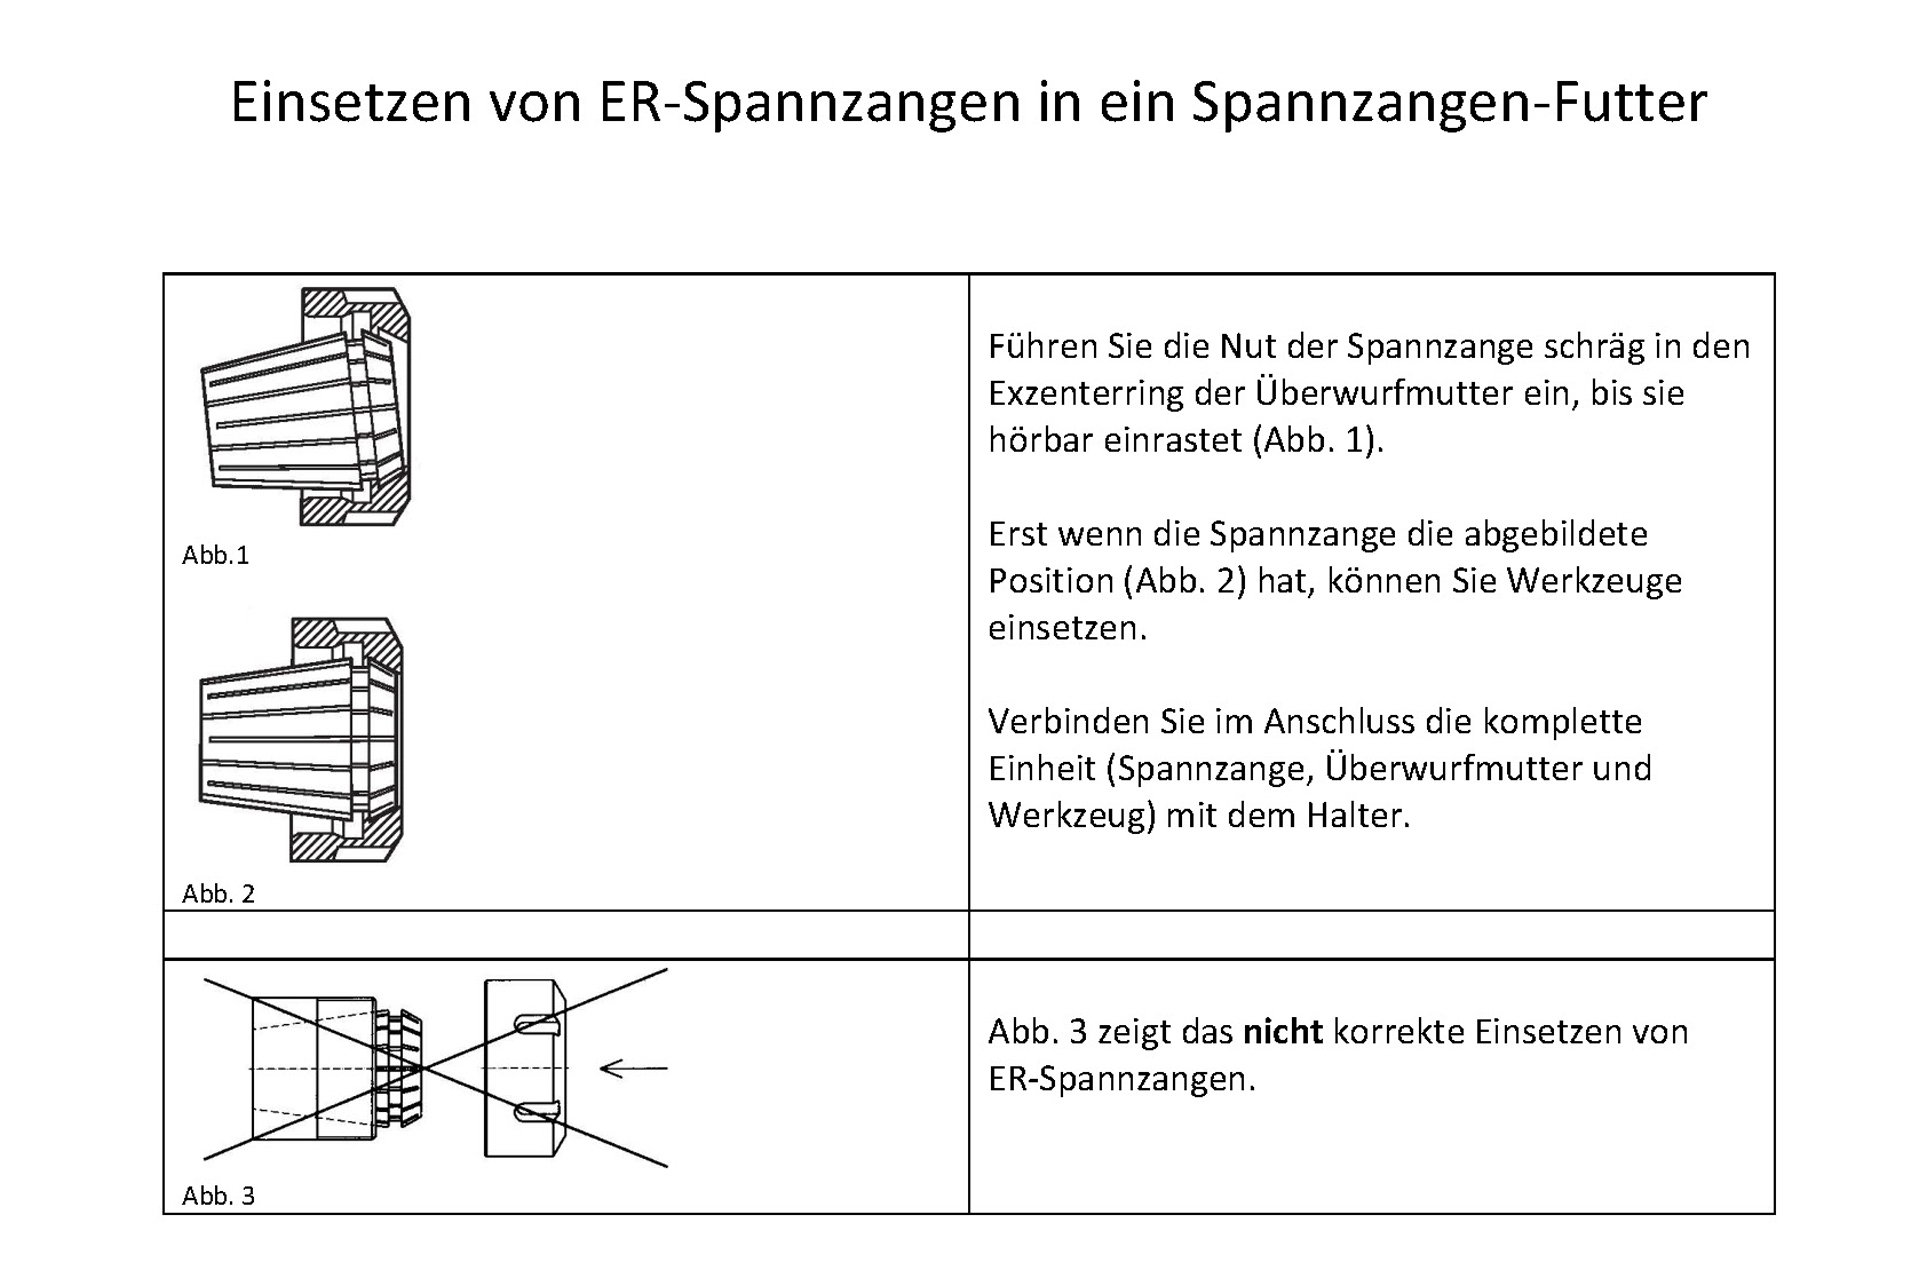 ER32-Spannzangen-Set 2 - 20 mm SK30 (DIN 2080) / M12 im Alu-Koffer